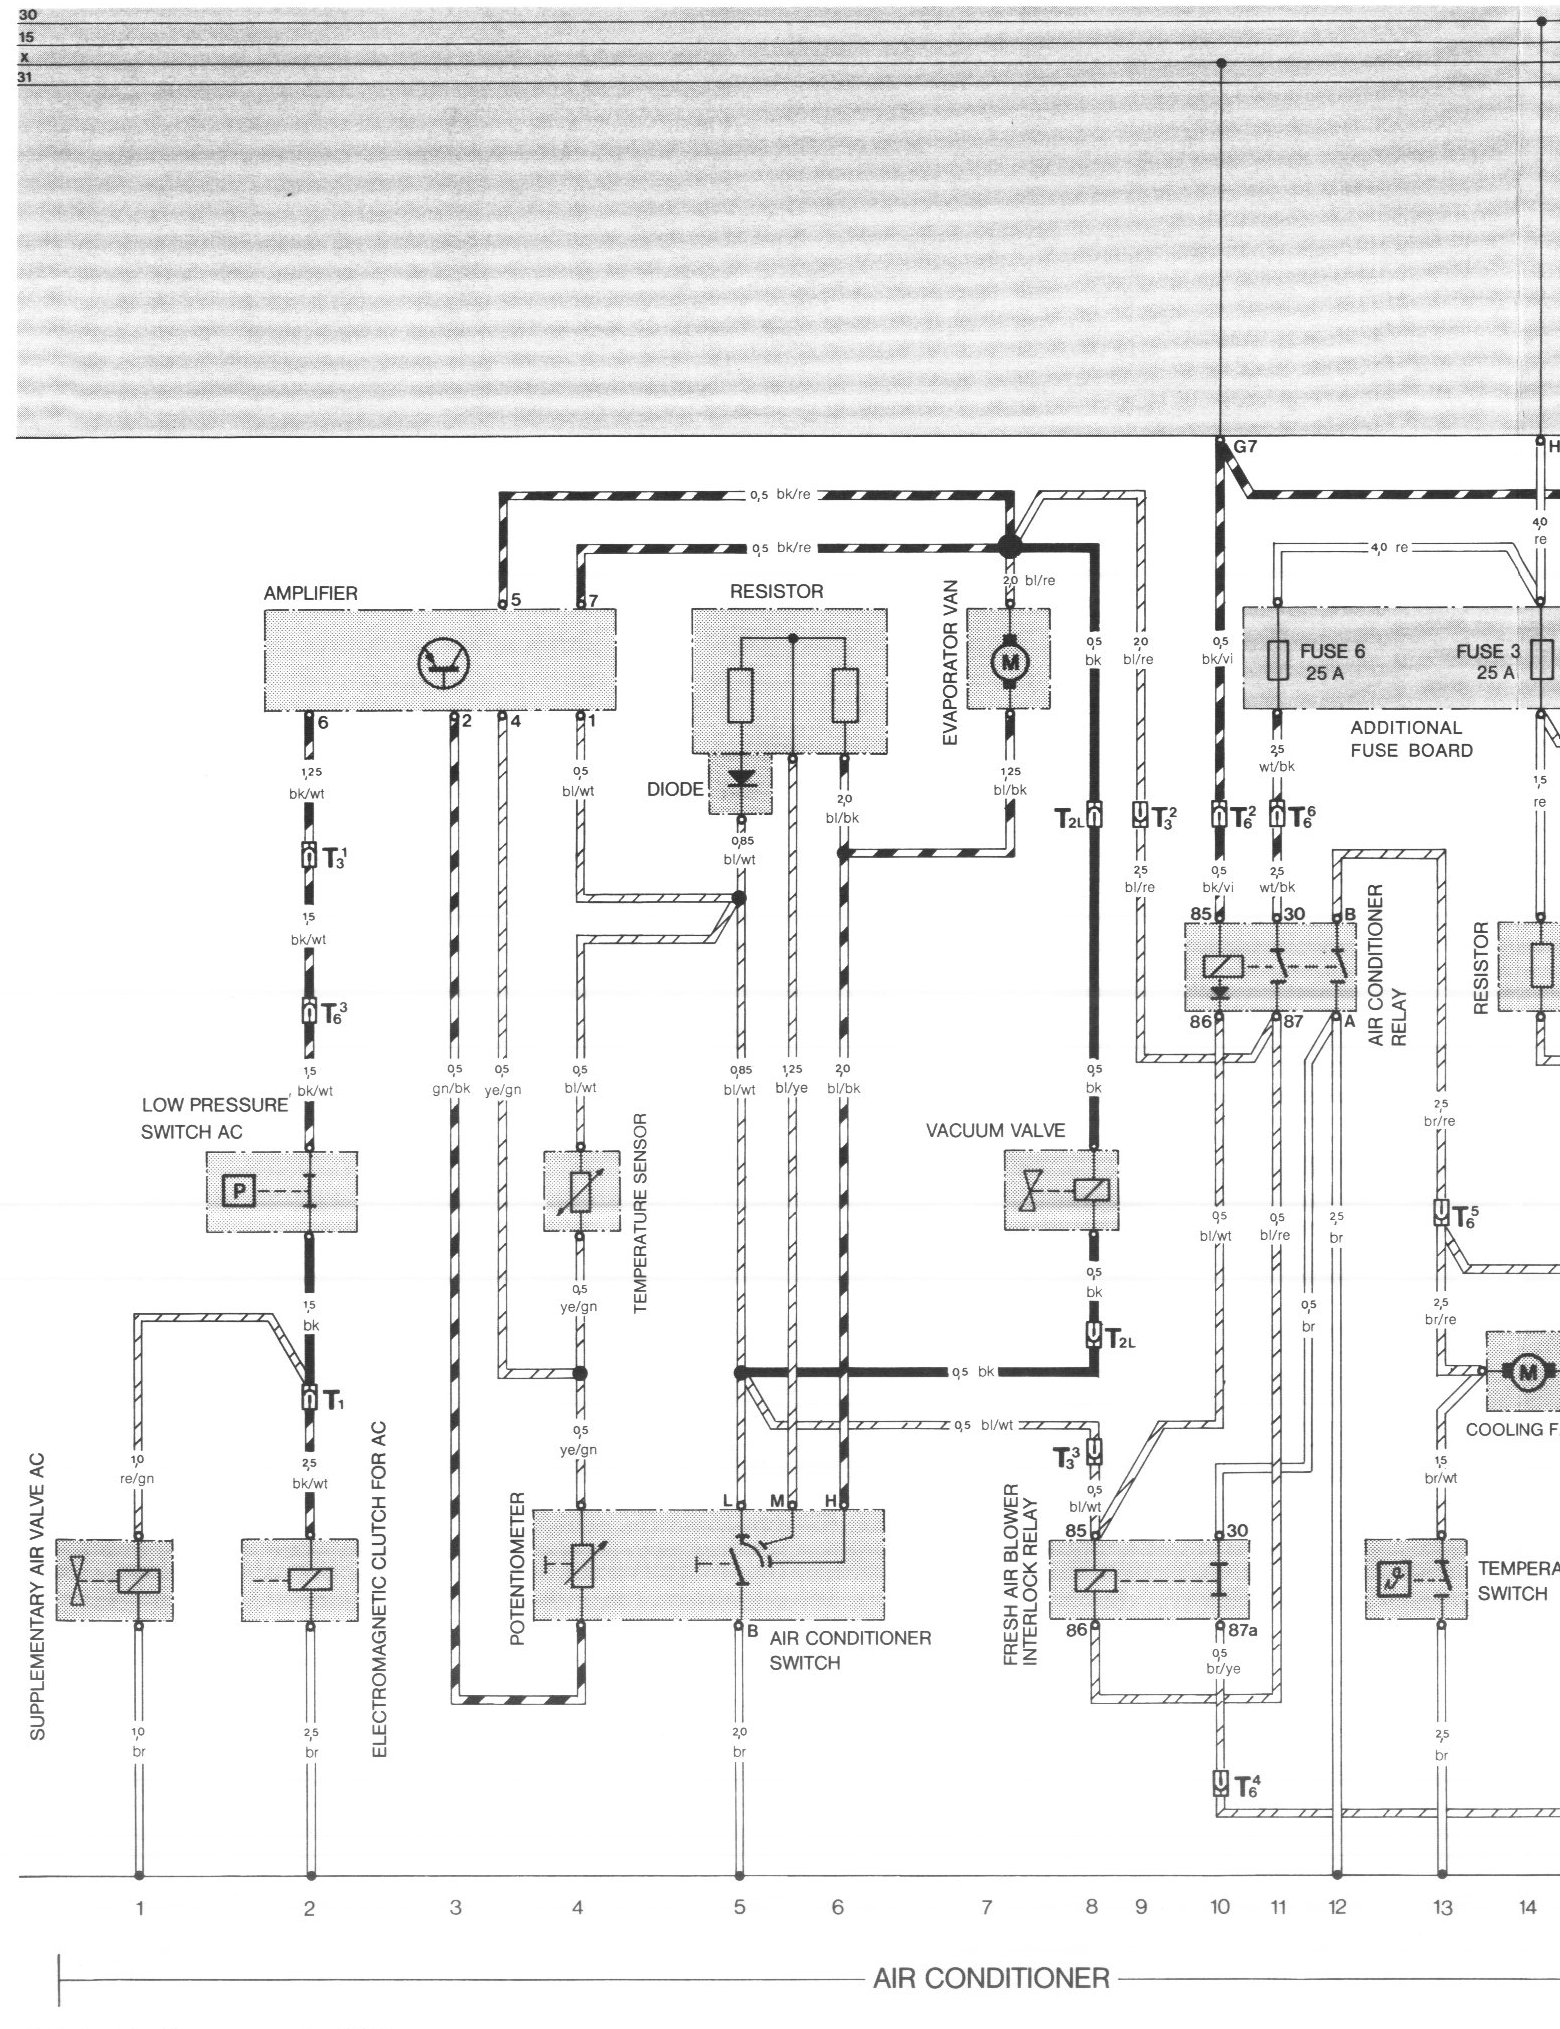 1987 944 turbo dash wiring diagram